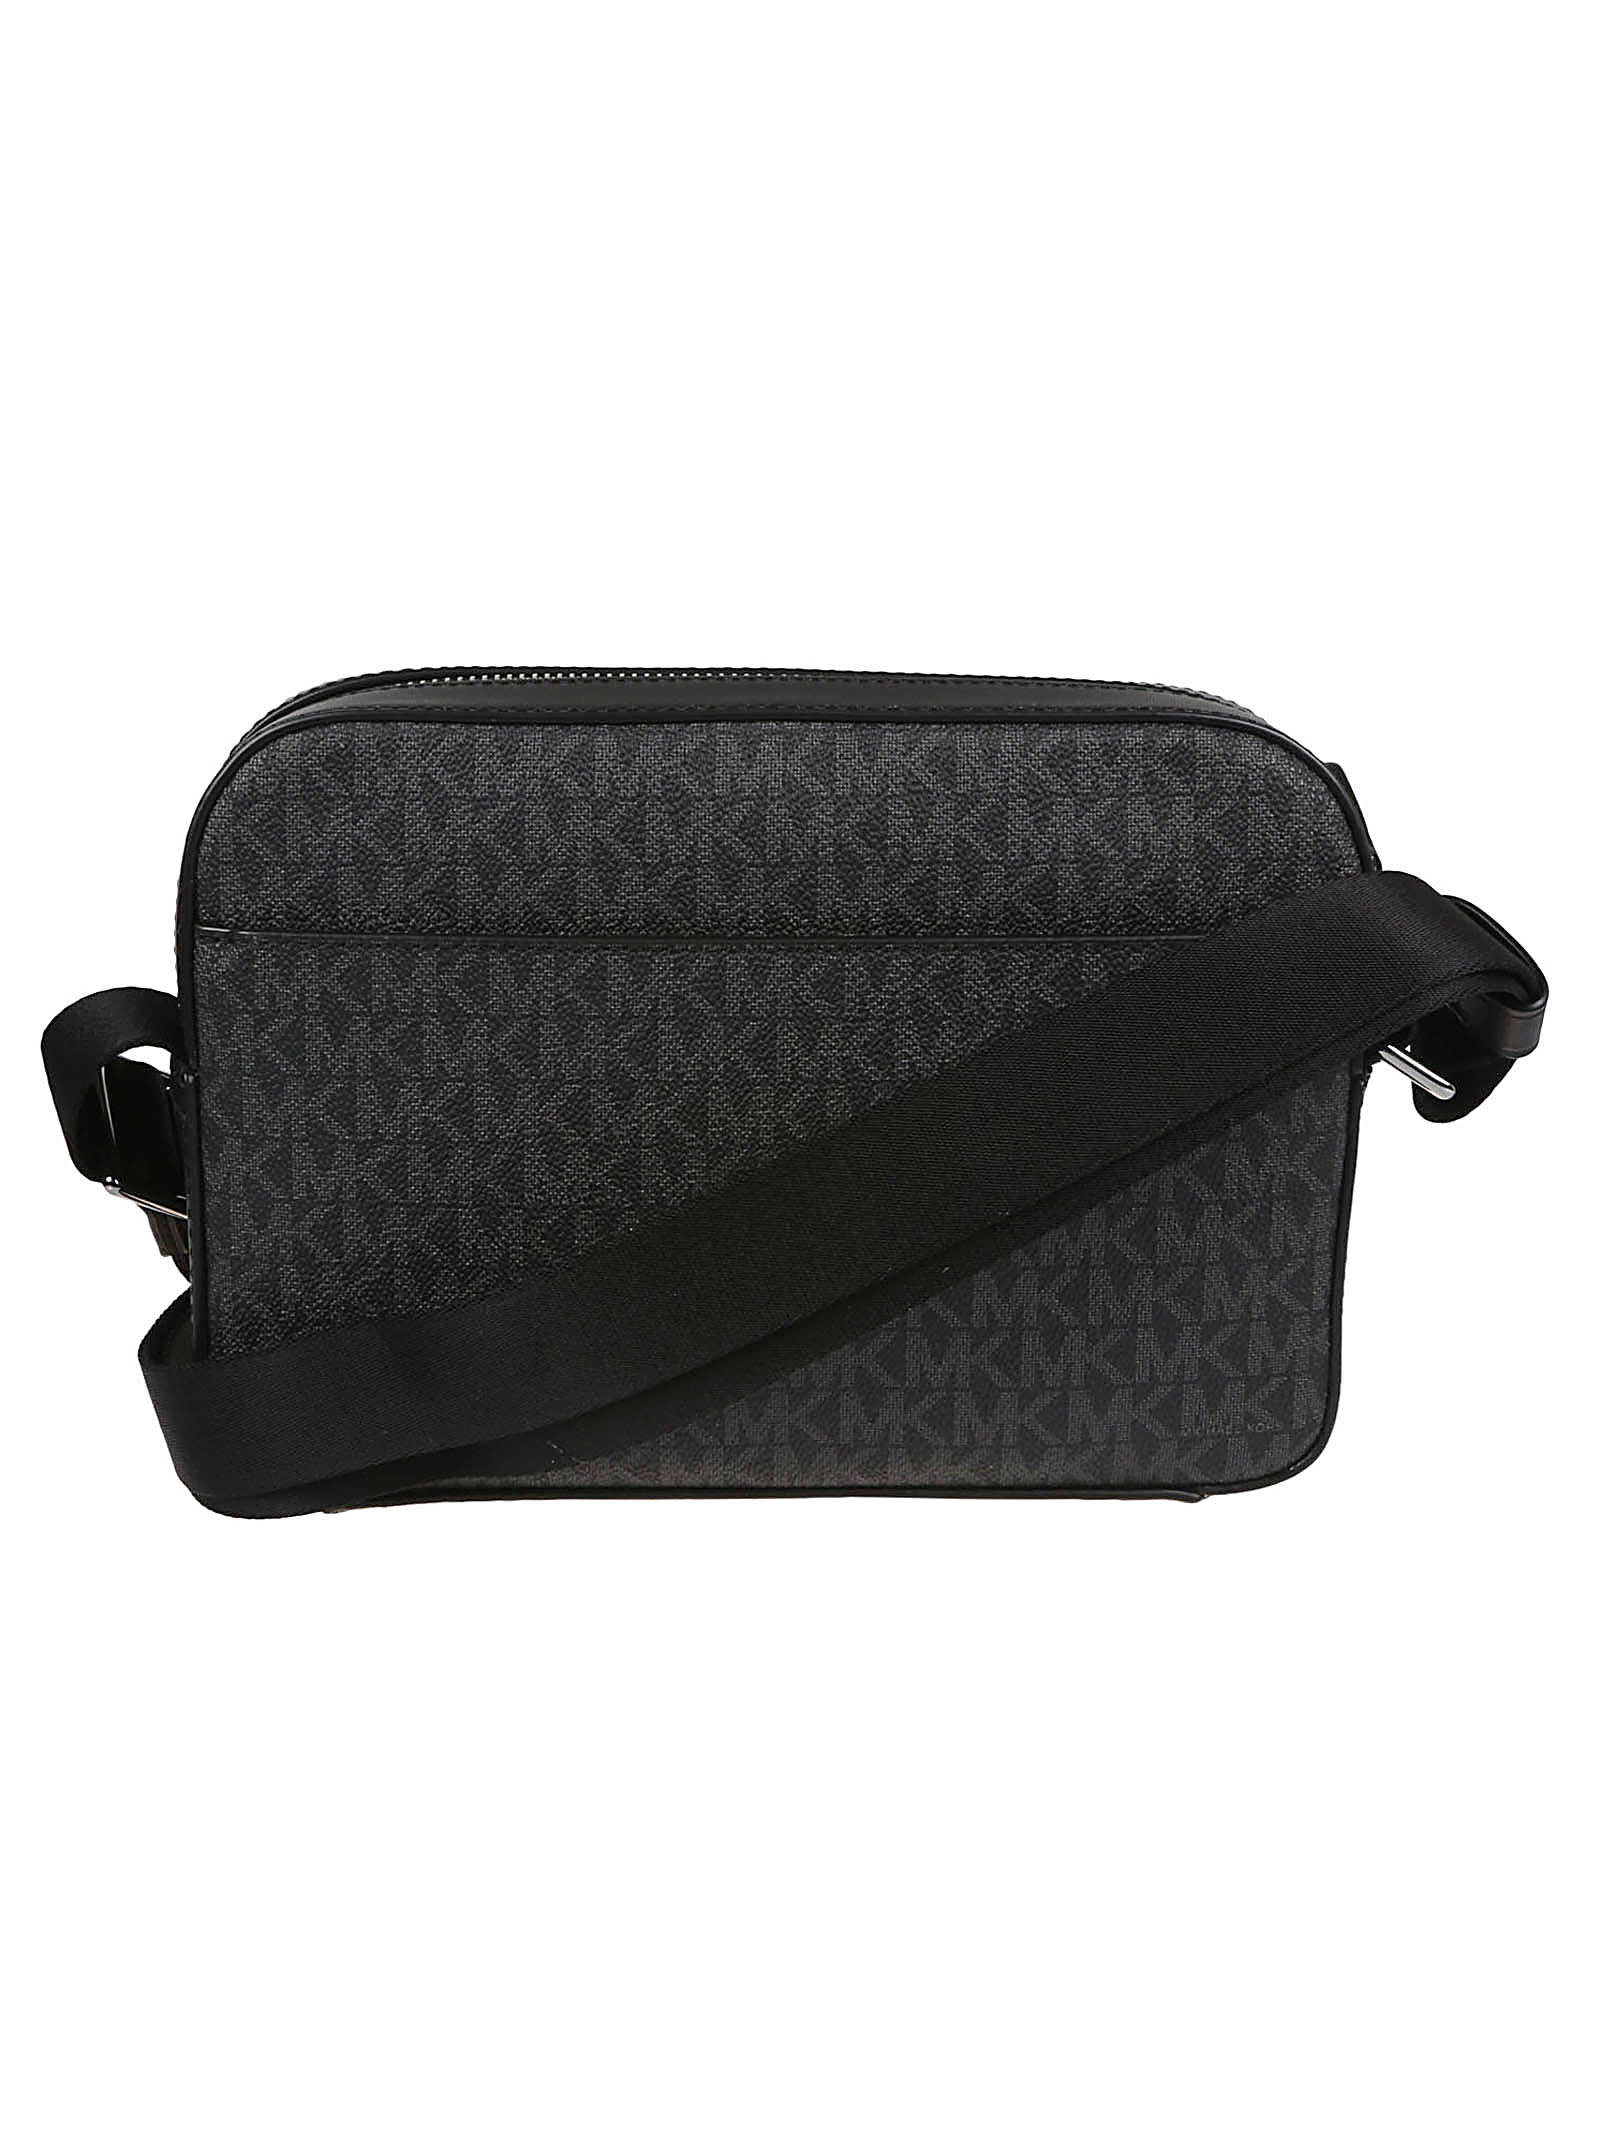 Michael Kors Hudson Logo Utility Crossbody Bag In Black | ModeSens